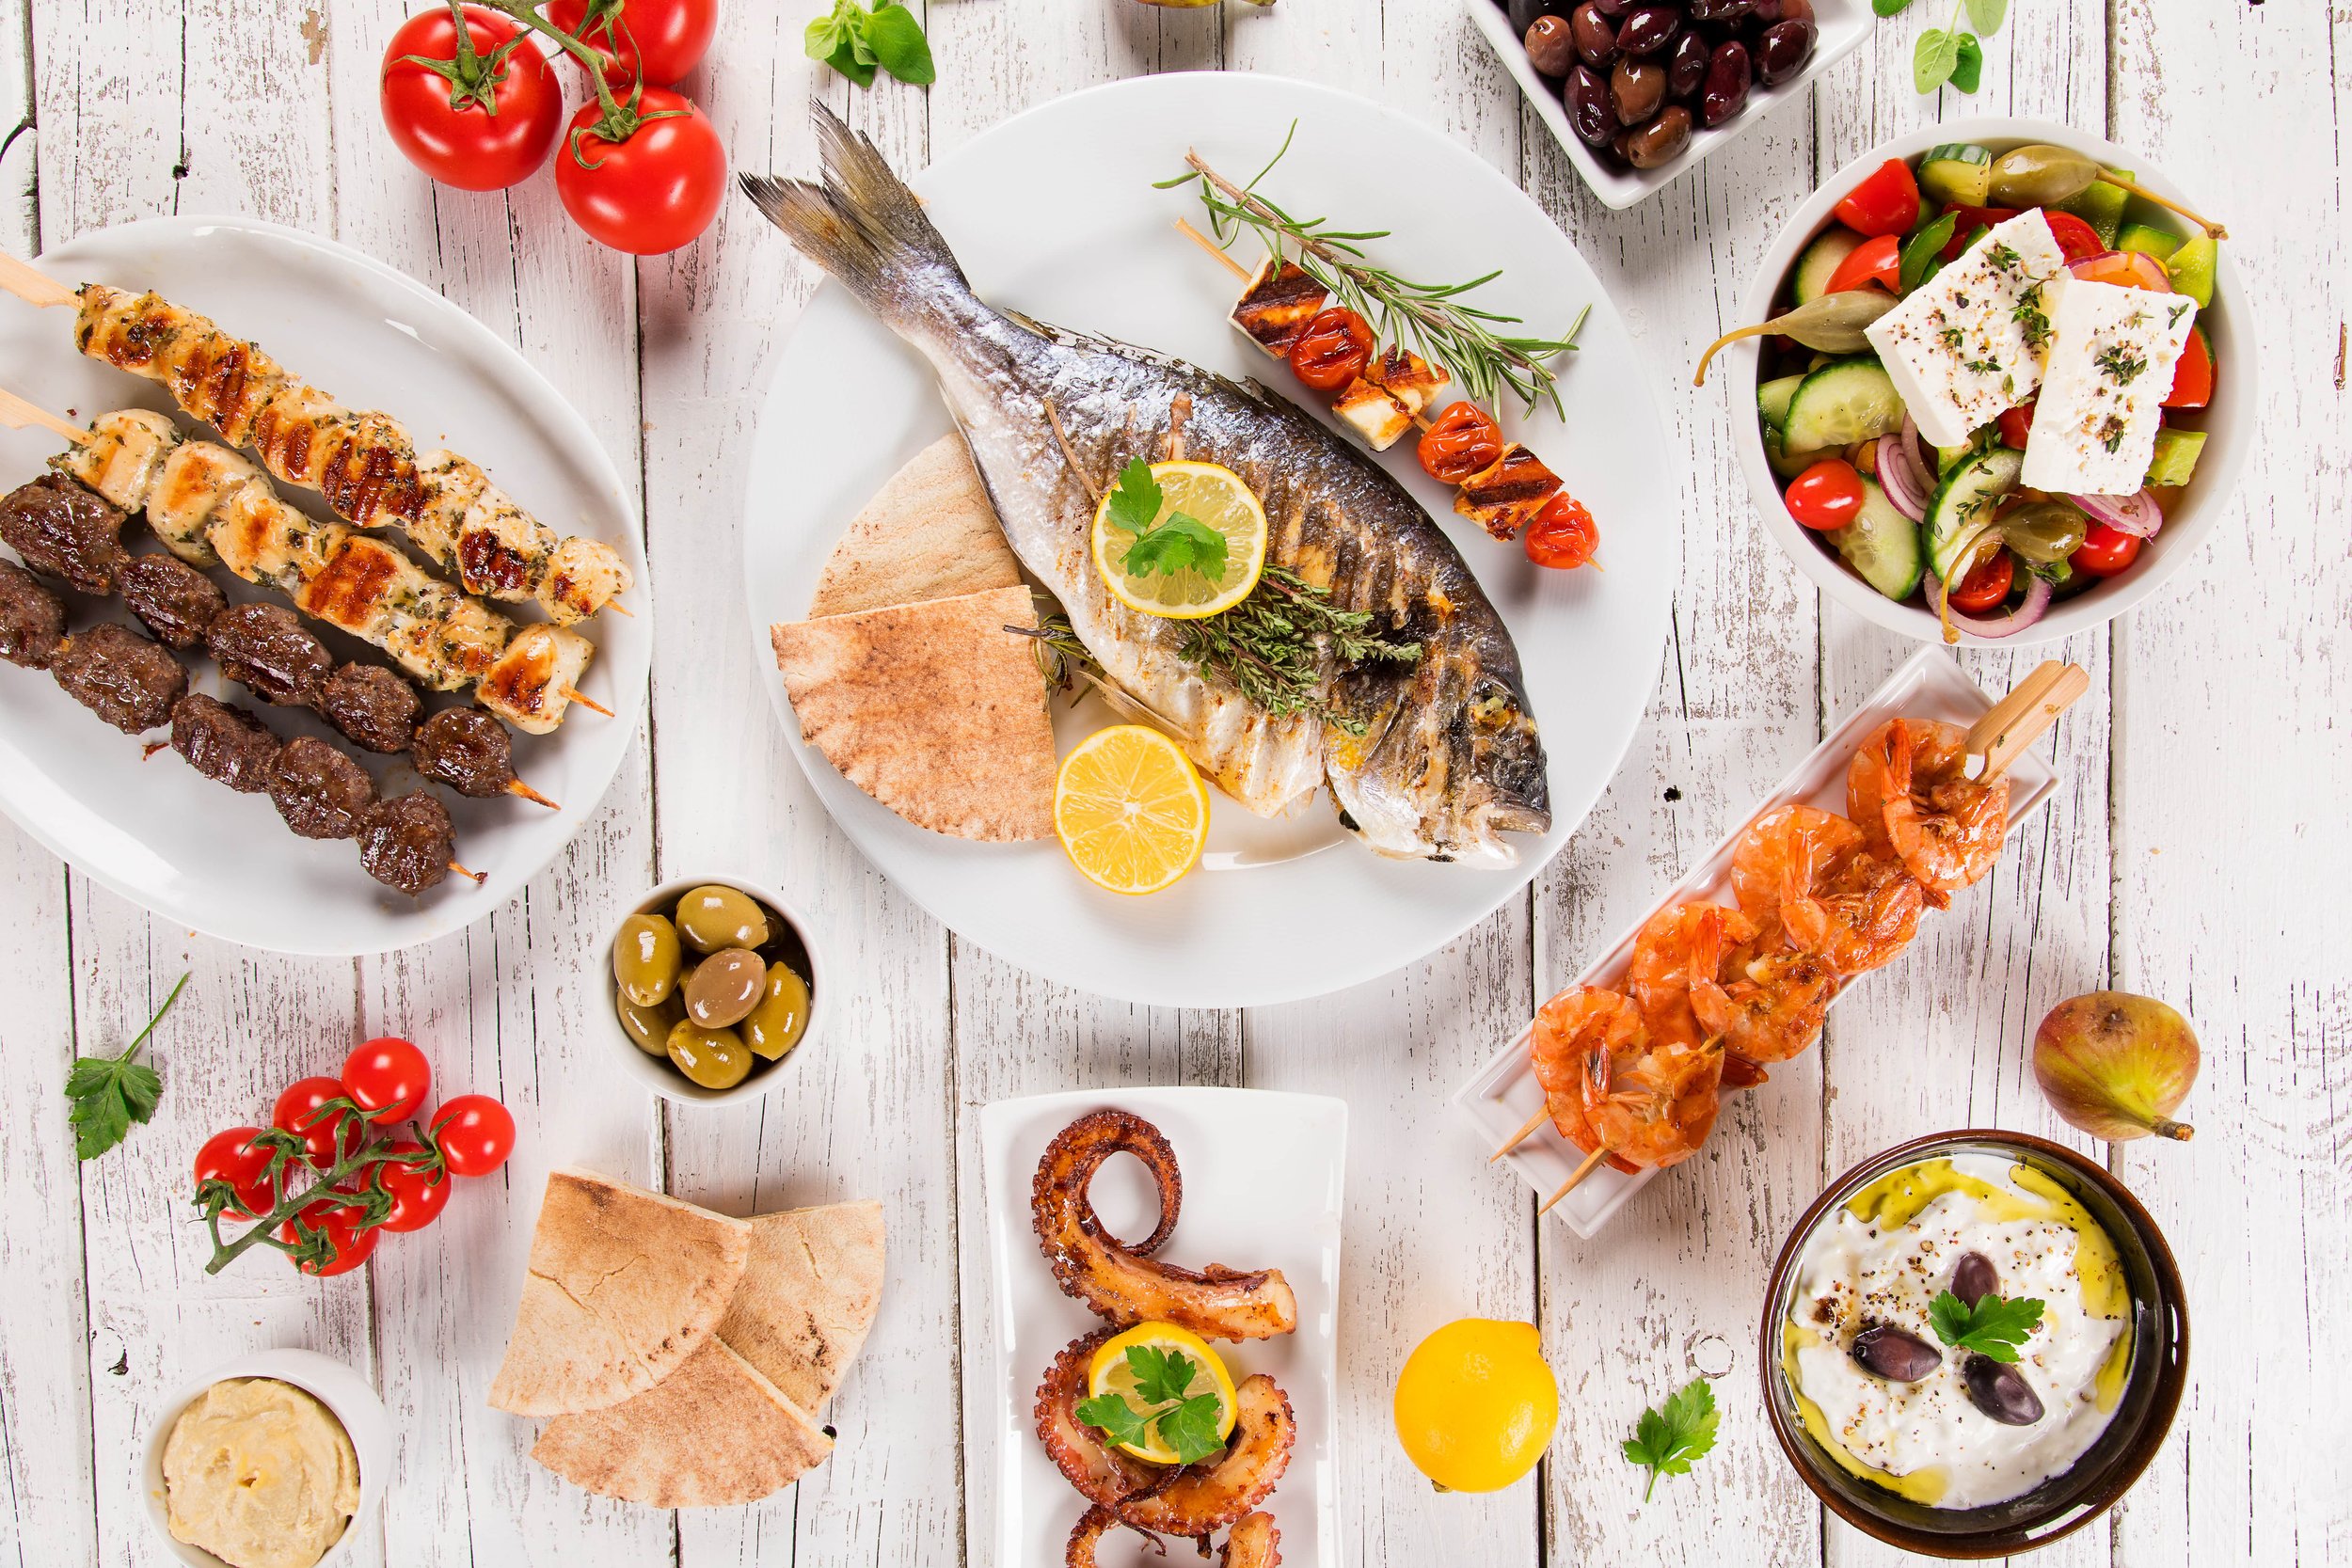 33 Lebensmittel, die man in Griechenland essen sollte: Traditionelle griechische Gerichte - Chefkoch Denise